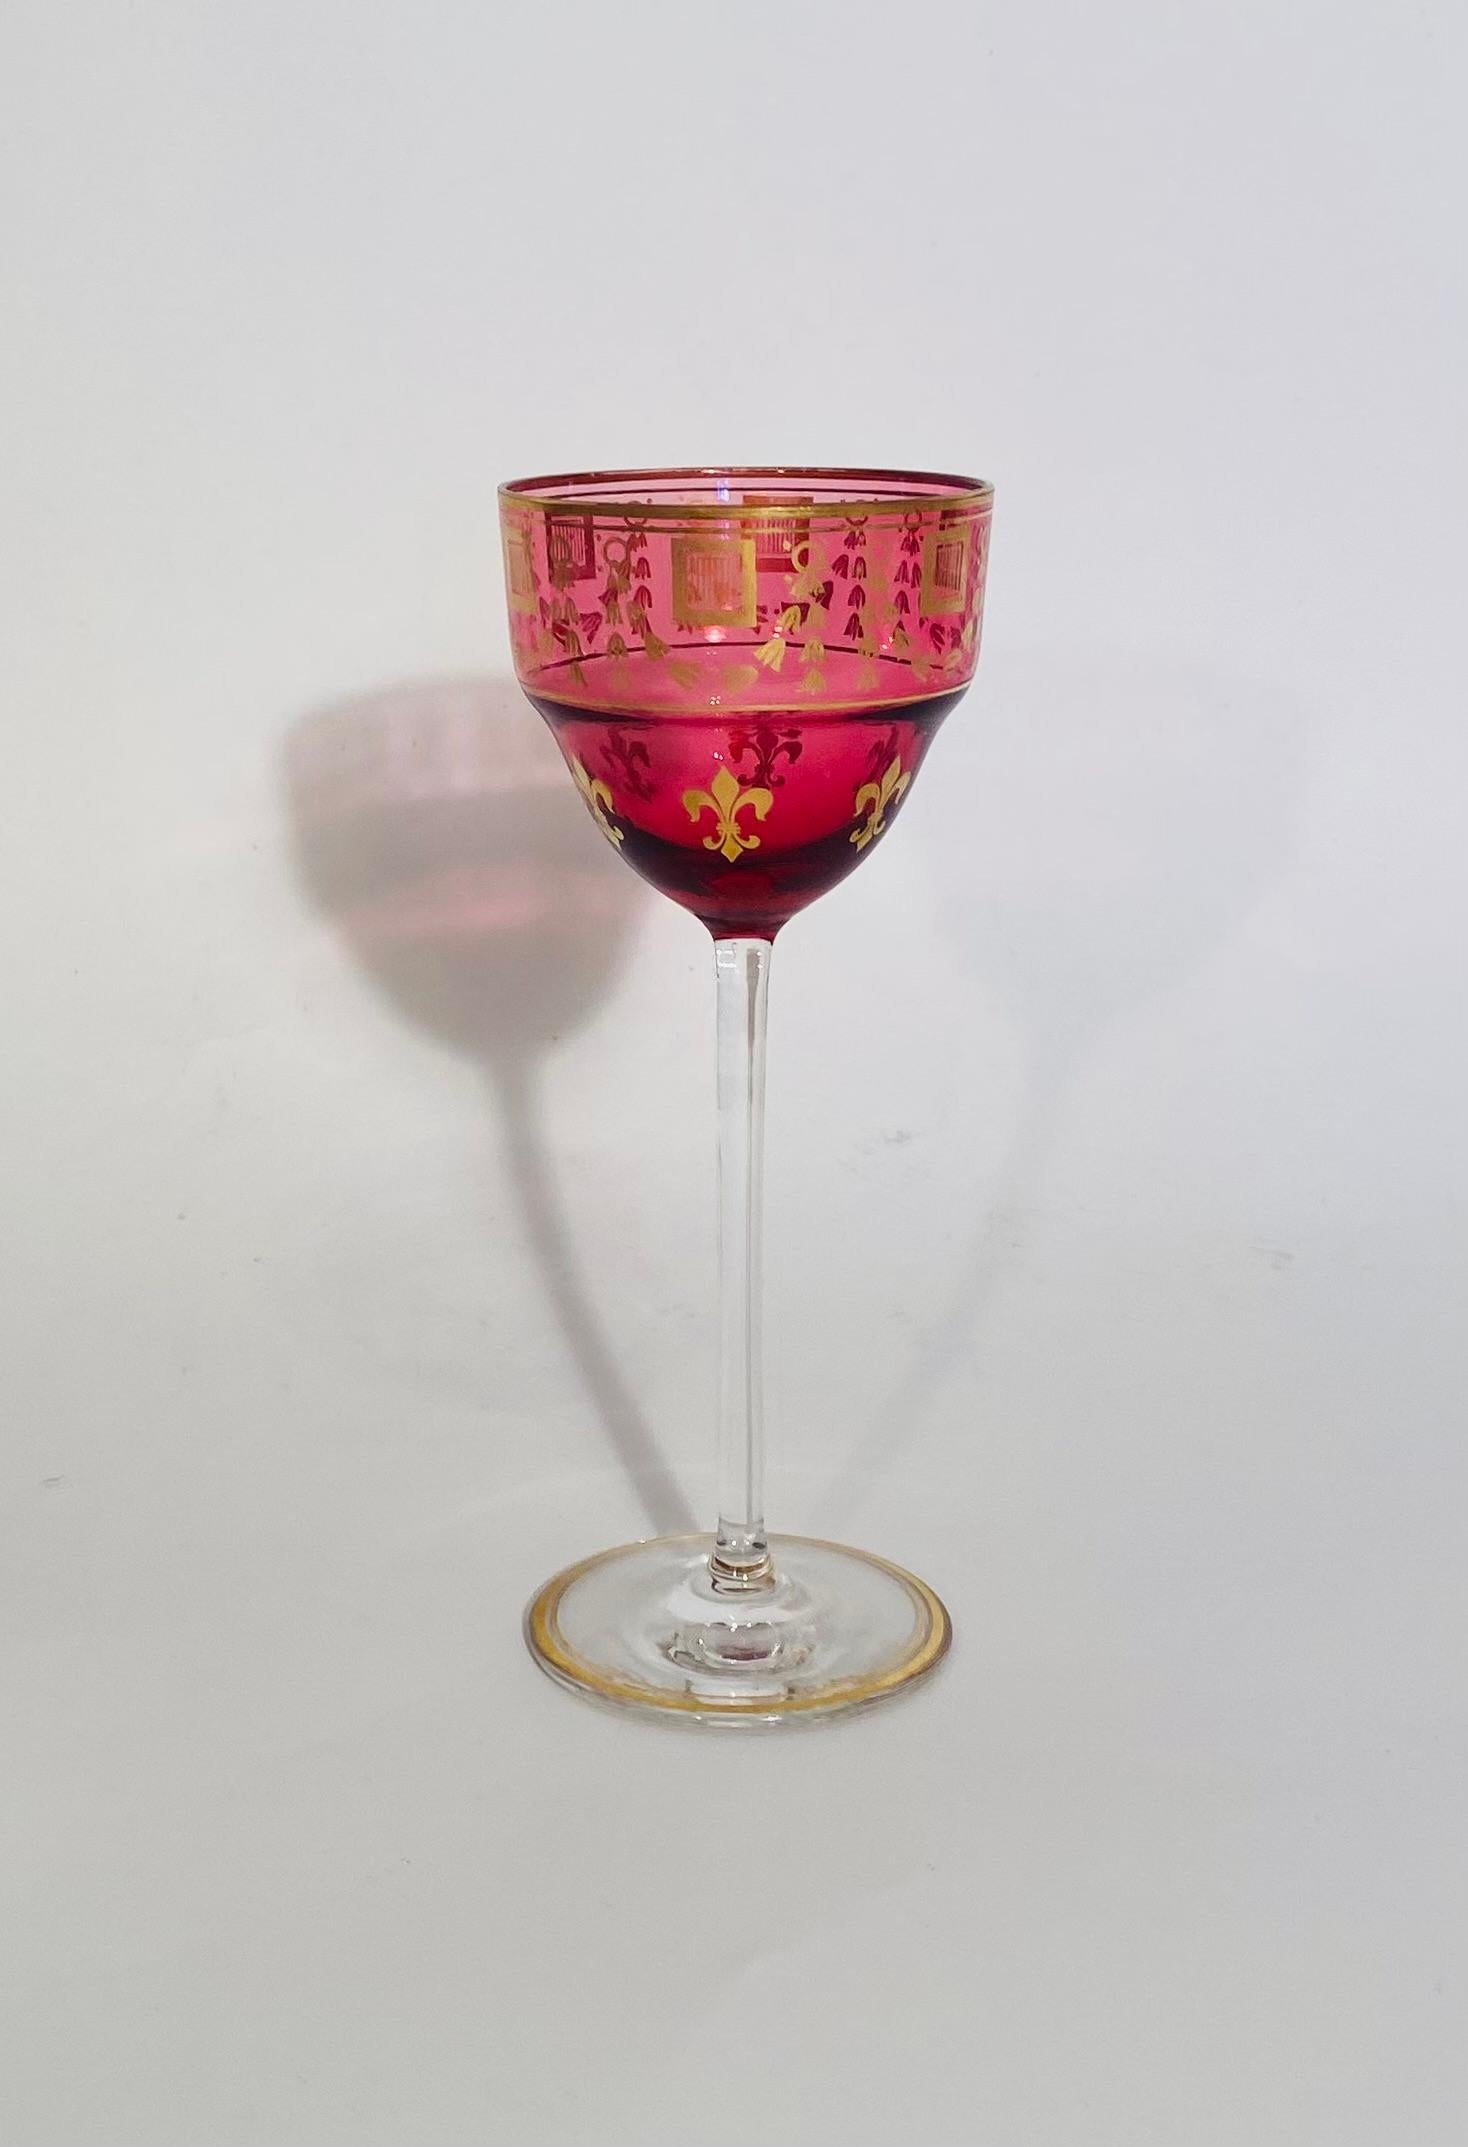 Un ensemble vibrant de gobelets à vin rouge rubis et dorés intéressants présentant un motif de fleur de lys. Joli et grand, en très bon état d'origine. Nous l'attribuons à l'une des plus belles cristalleries françaises de Baccarat ou de Saint Louis. 